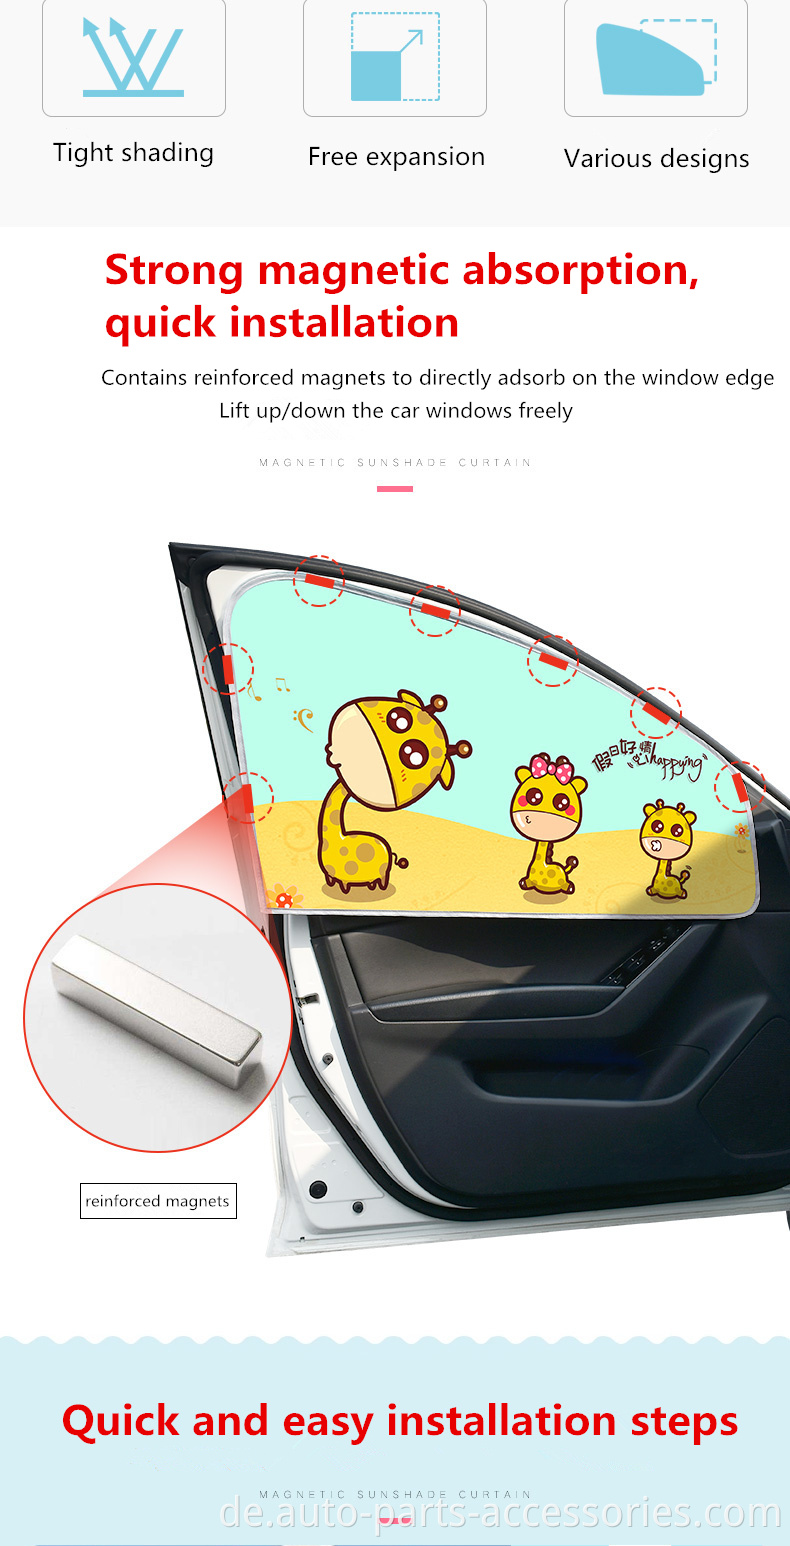 Hochwertige UV -Silberbeschichtung Stoff gekrümmte Form wasserdicht für Autofenster Magnetschatten